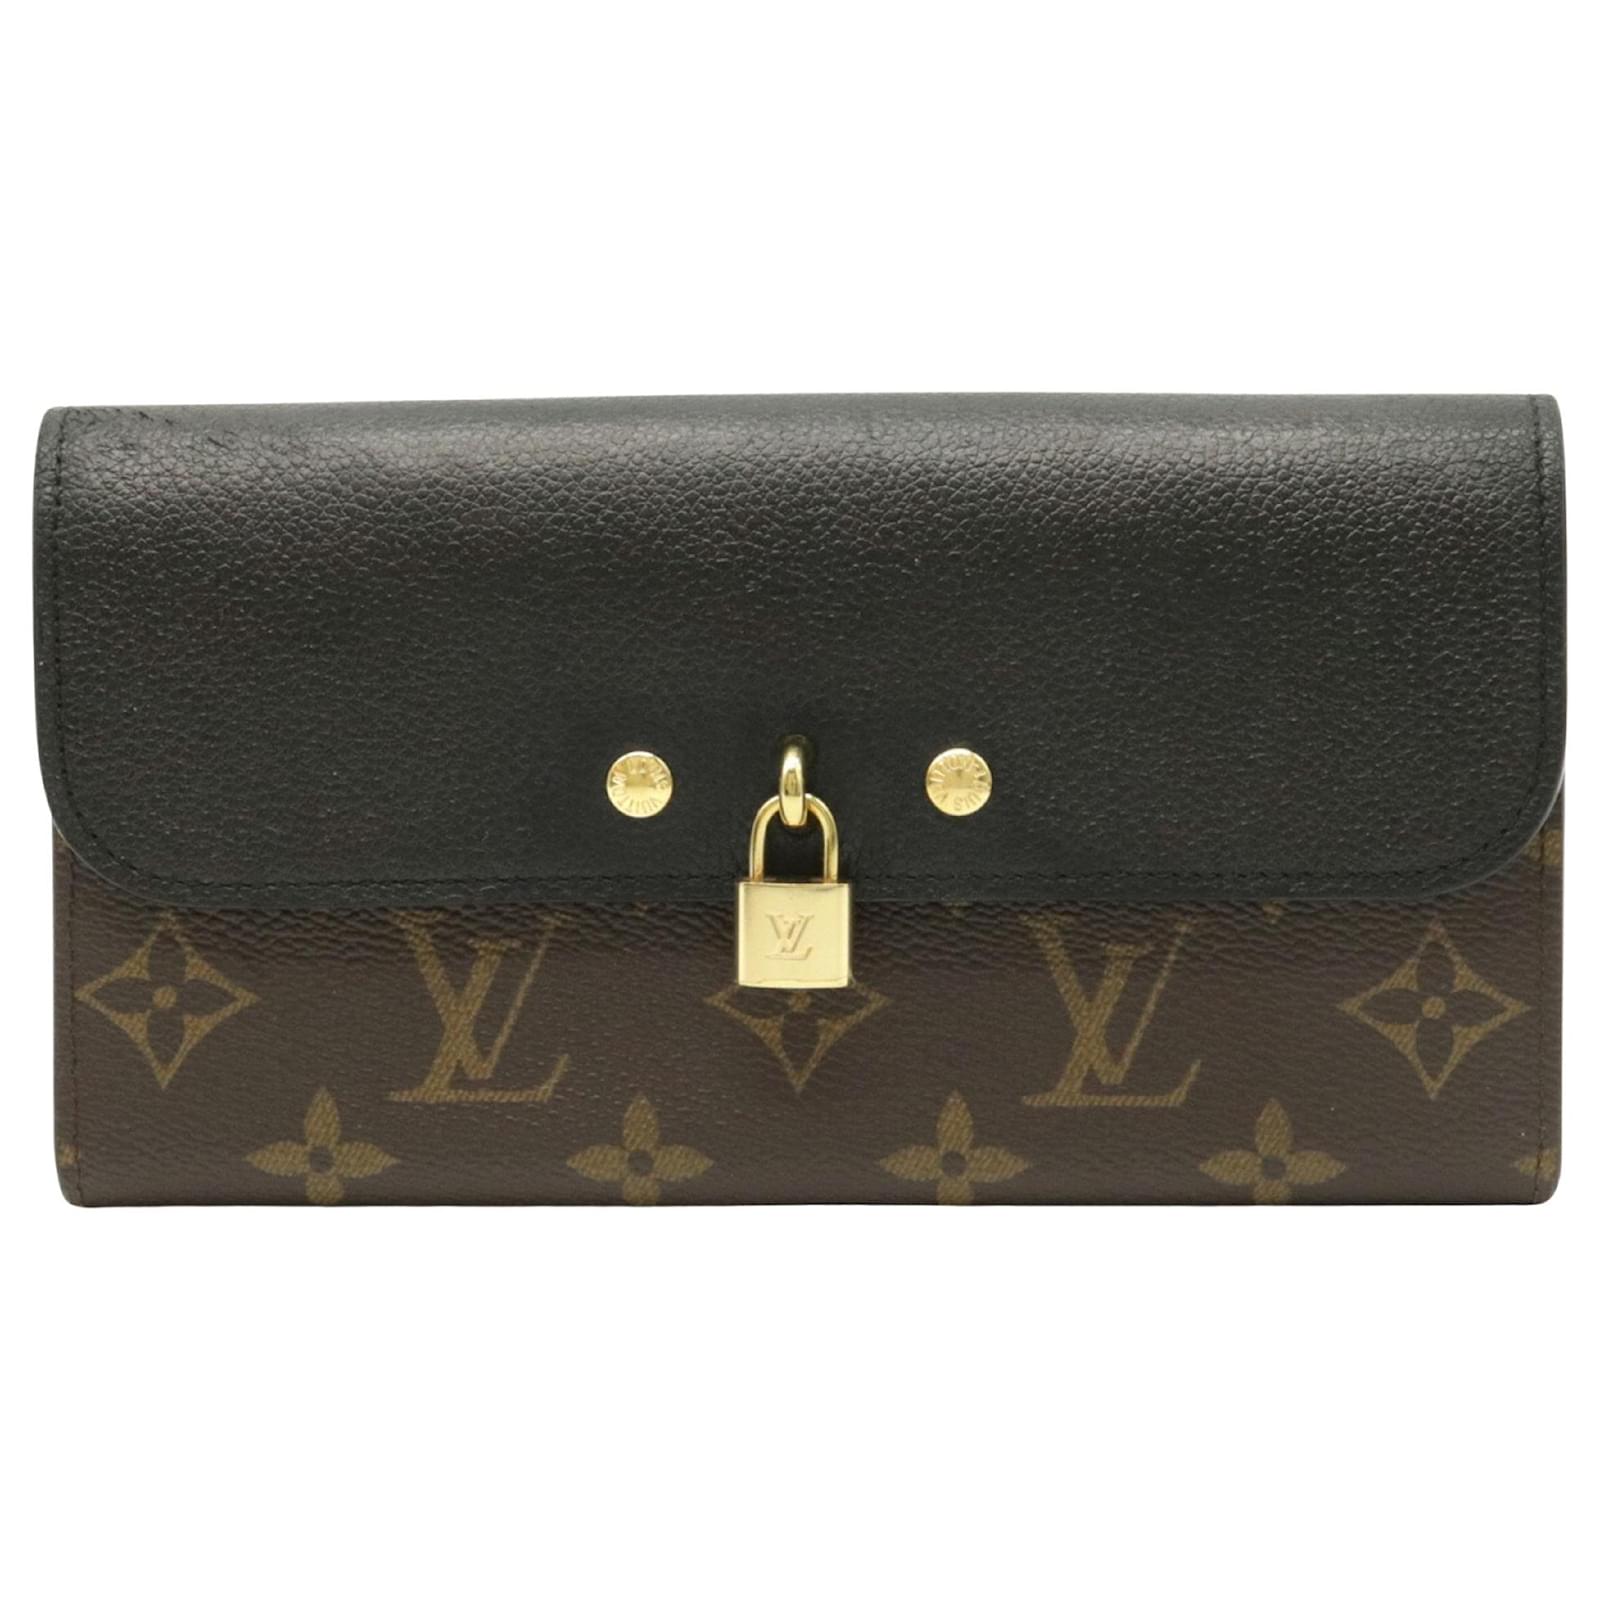 Louis Vuitton Venus Wallet Case